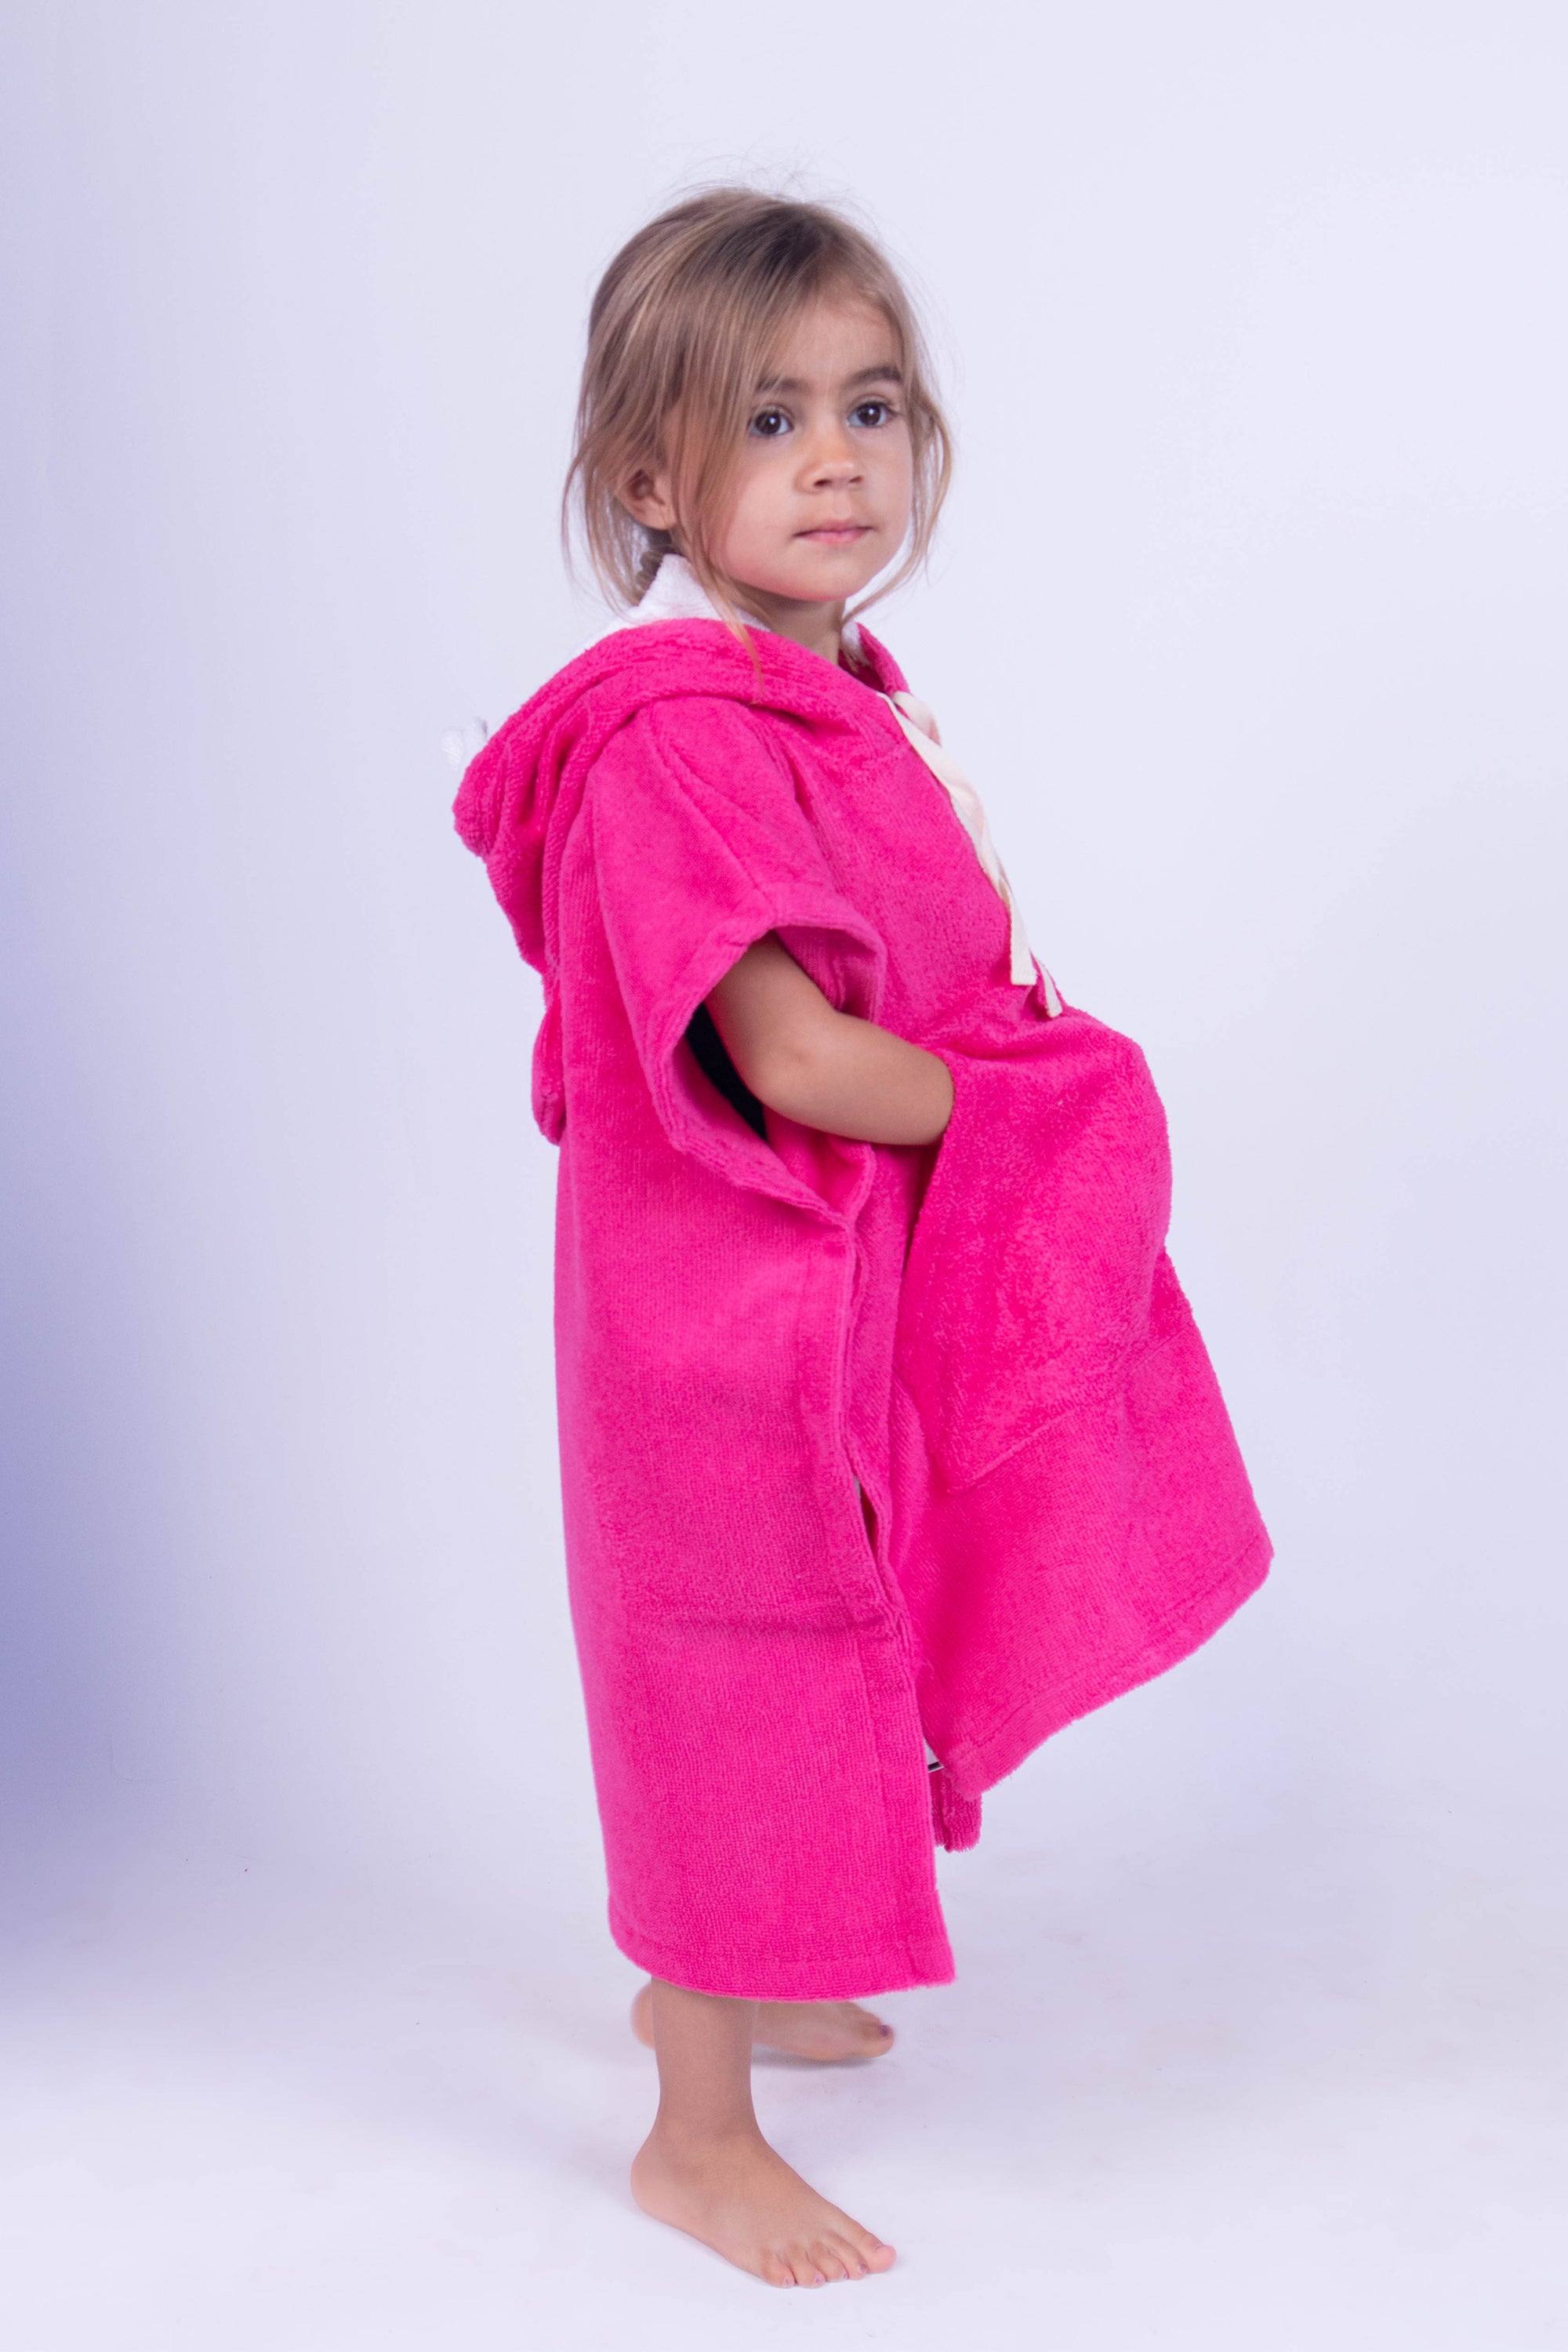 Poncho toalla para niños y niñas con shark face, color rosa mexicano.